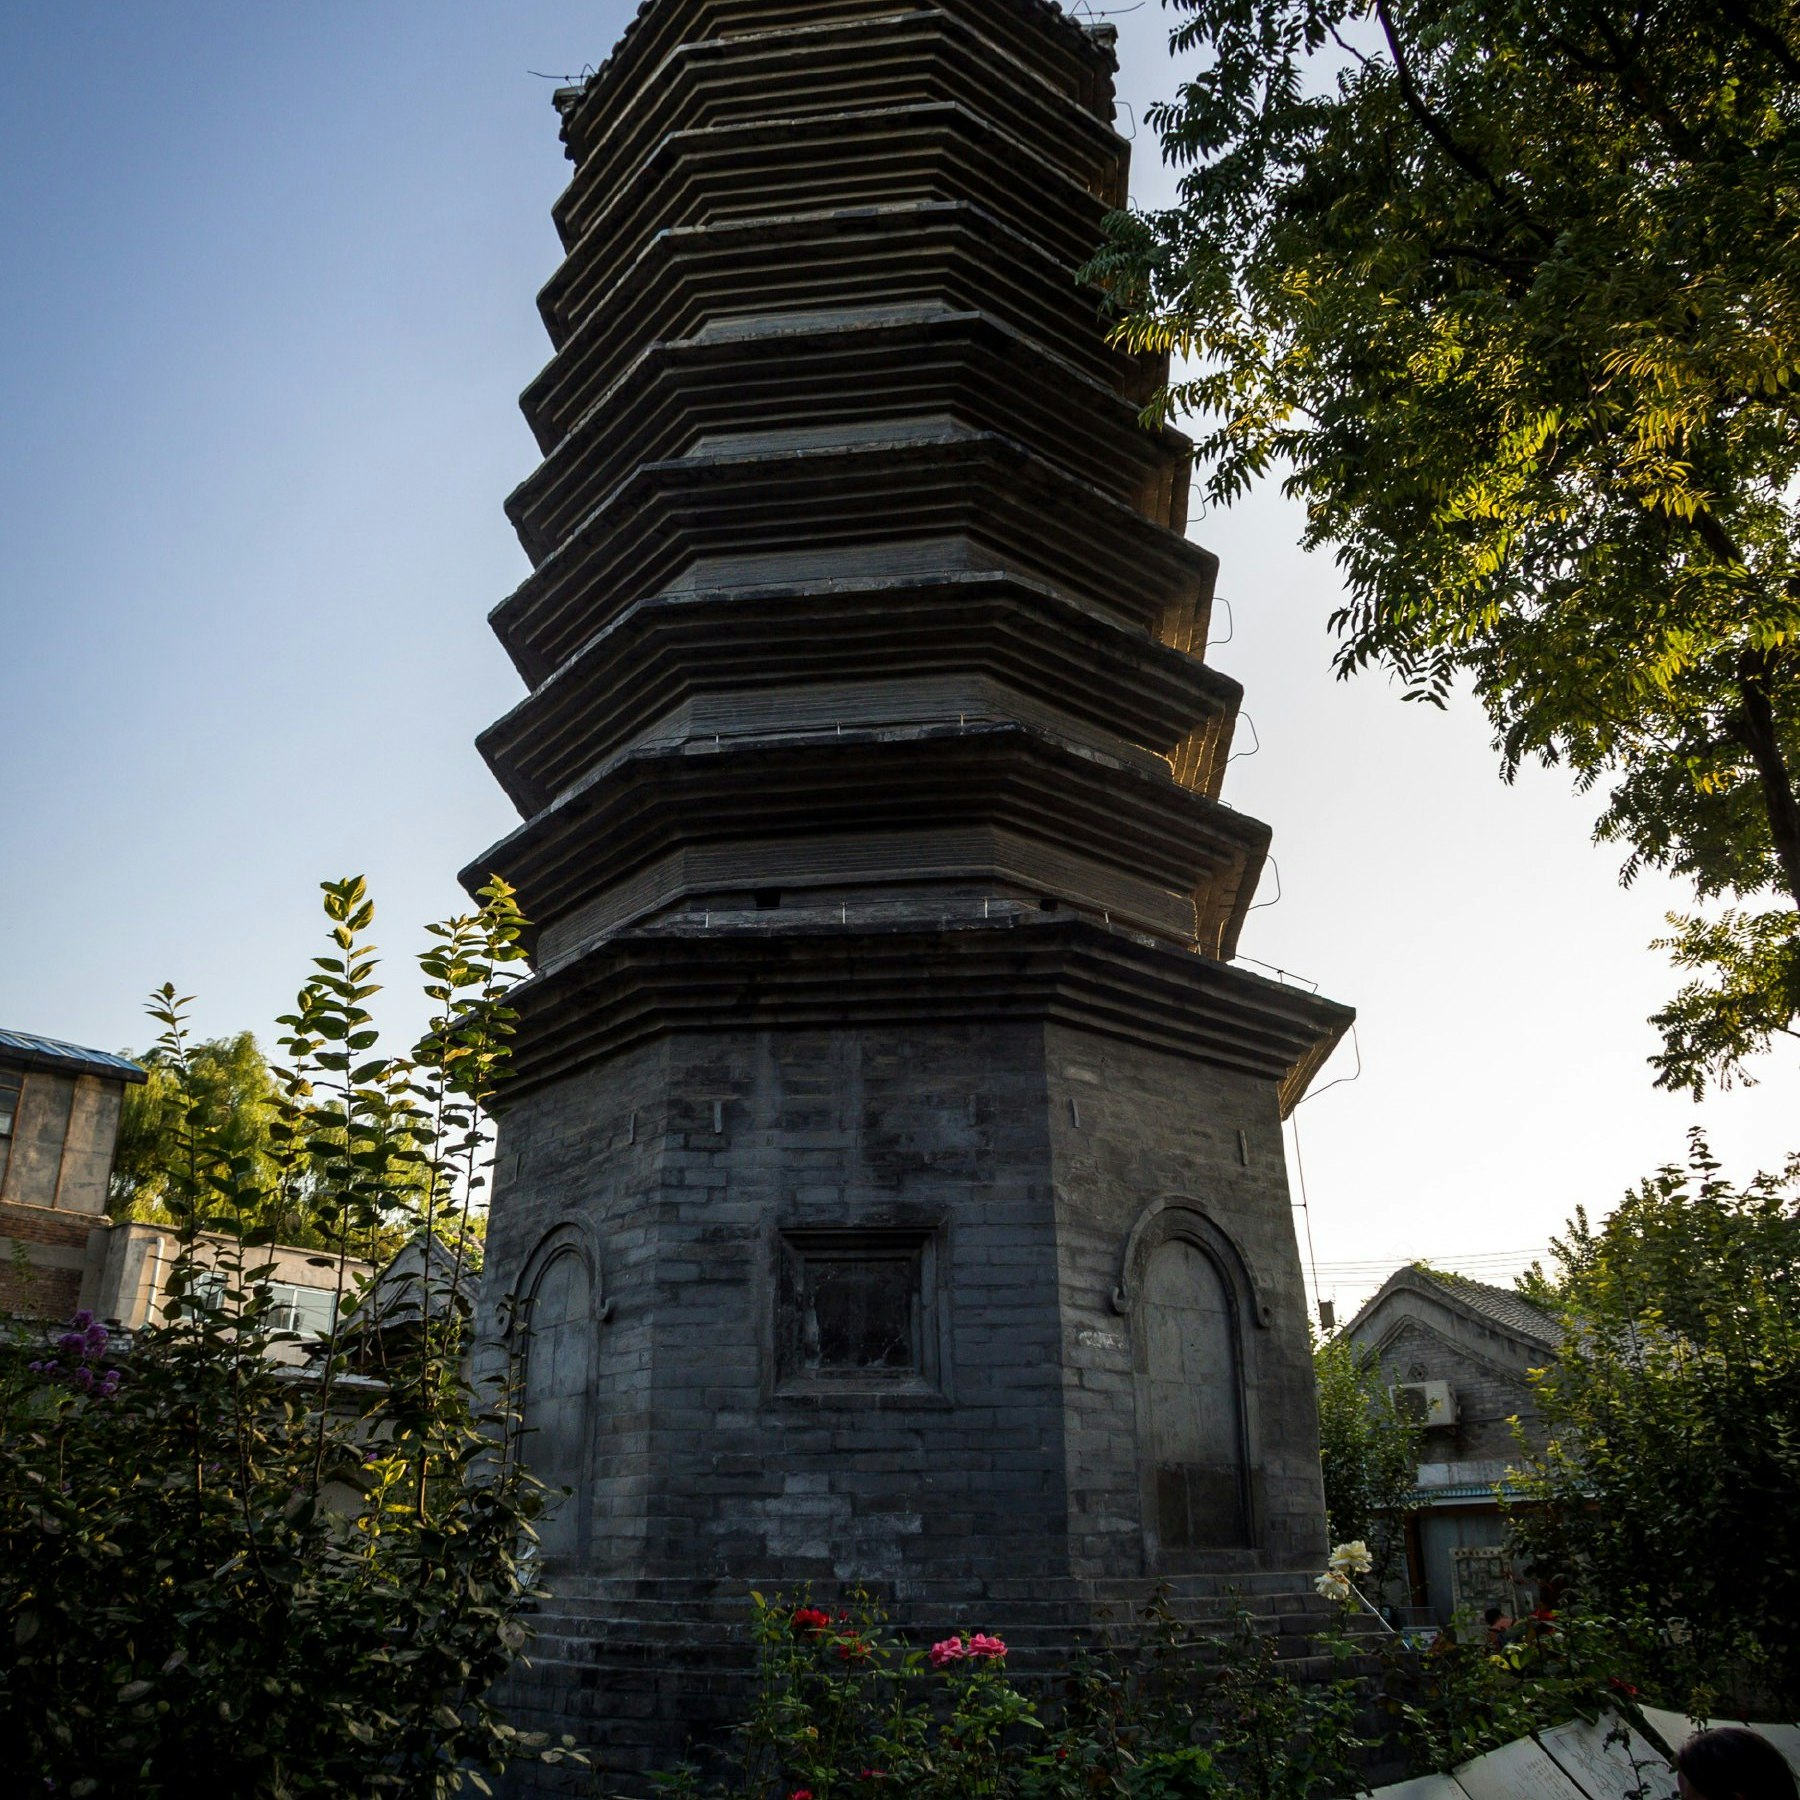 Exterior of Wan Song Laoren Tower pagoda in Beijing's Xisi district